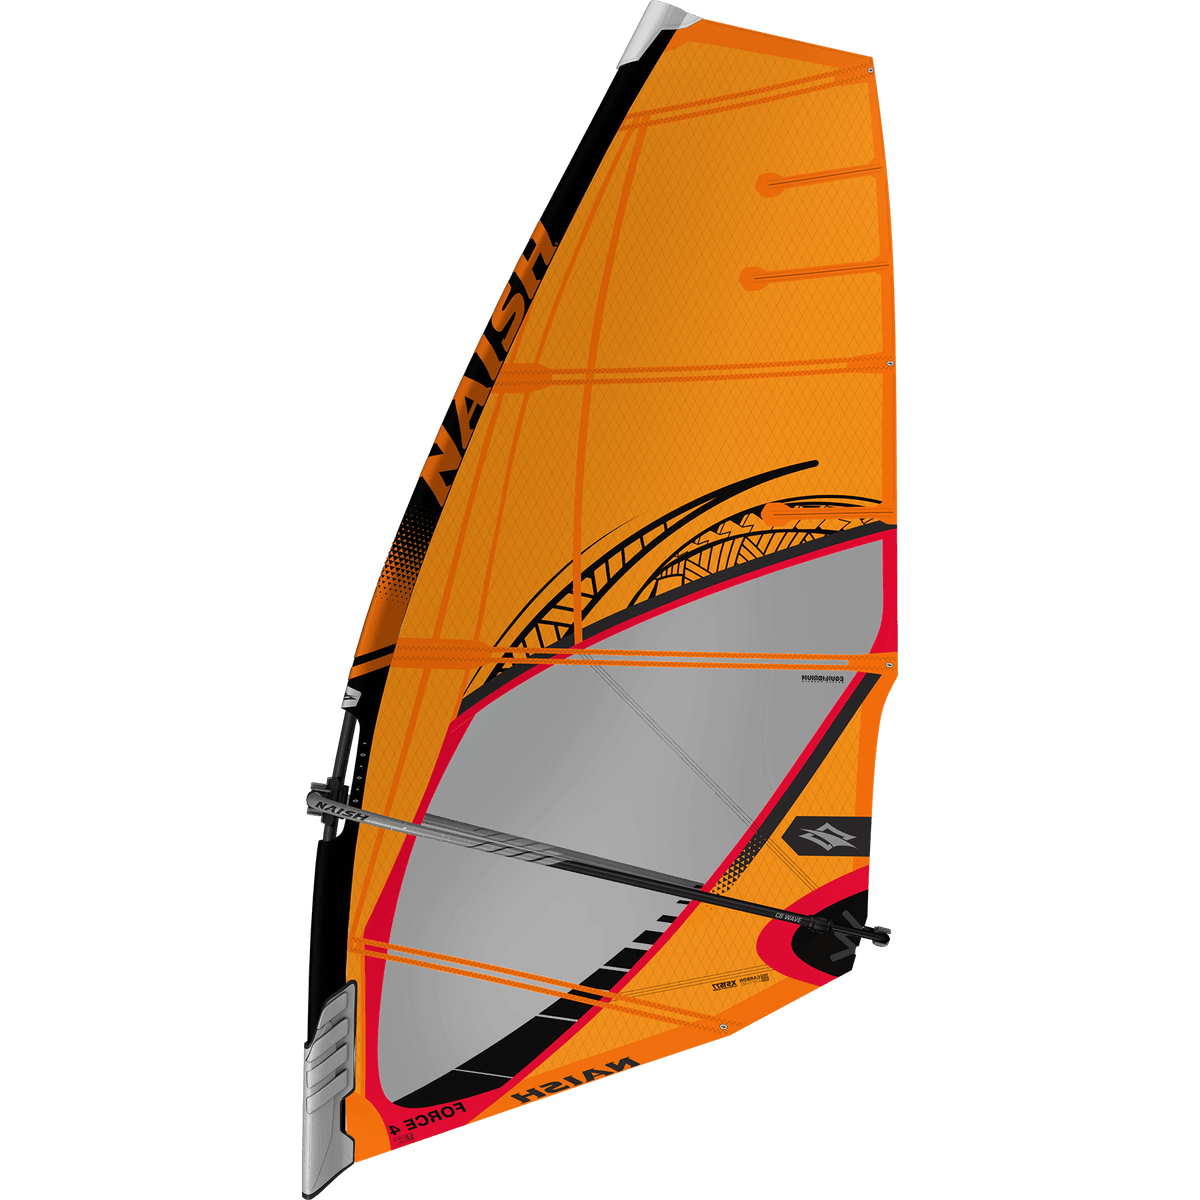 ウィンドサーフィン セイル 6.4 - マリンスポーツ